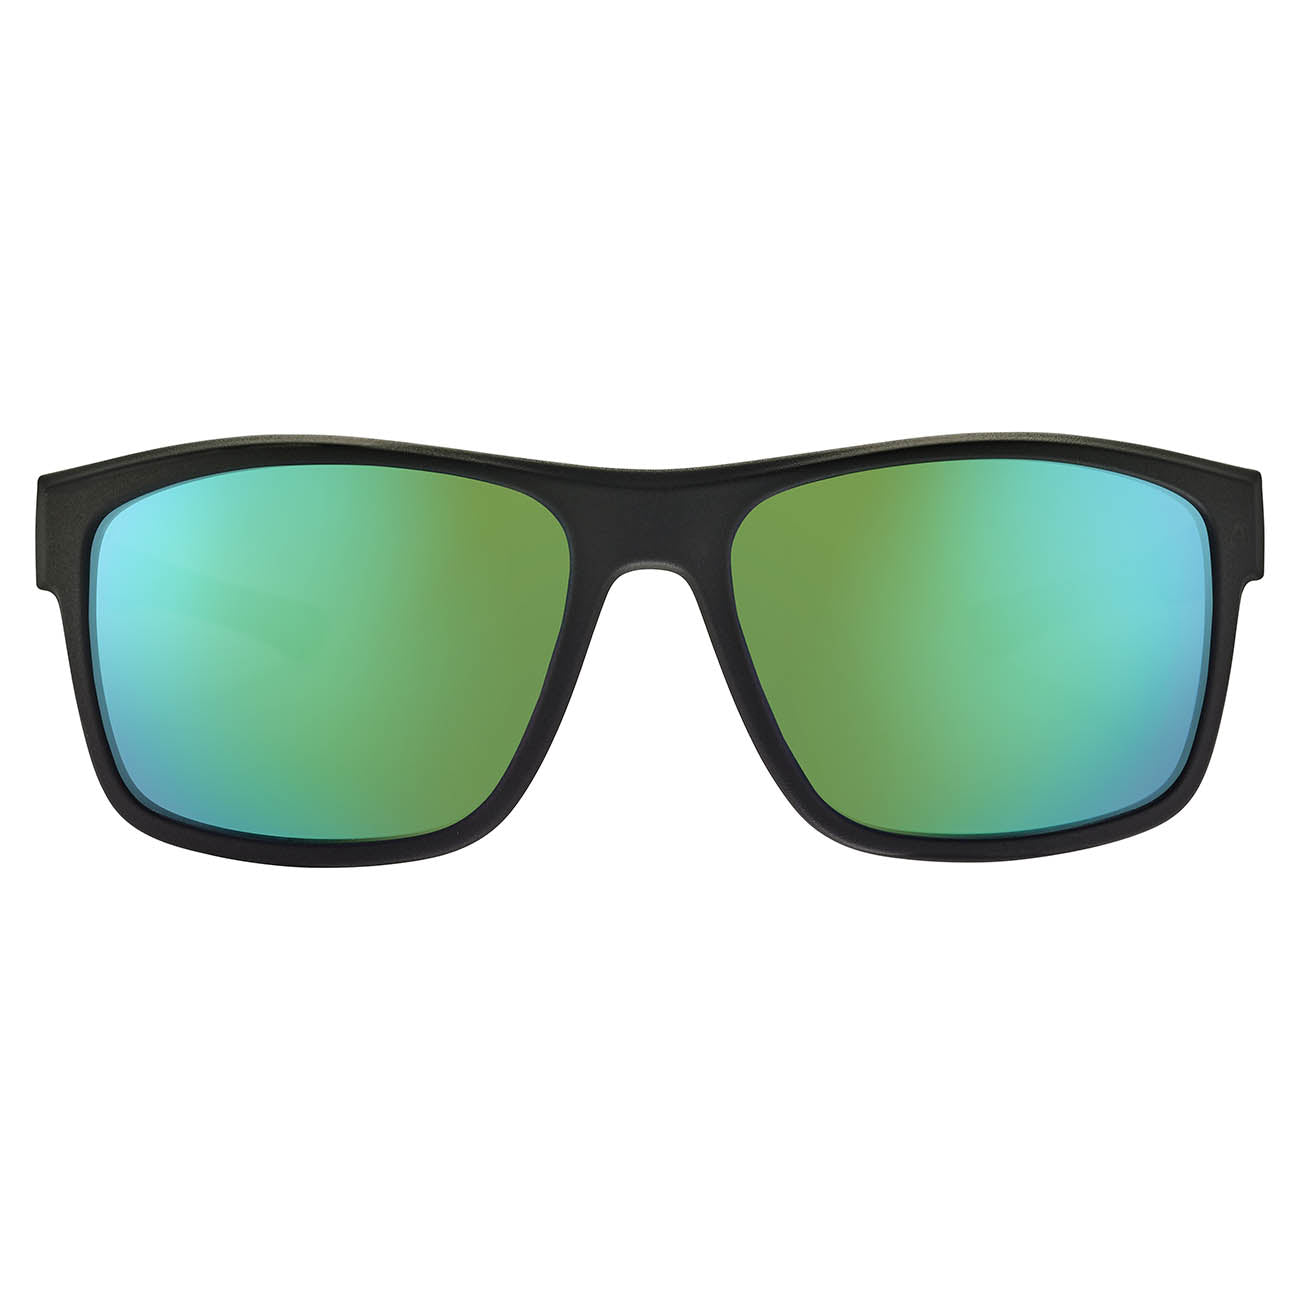 Cebe PROGUIDE CBS034 Sunglasses - Black Soft -Zone Grey Cat.3 Green